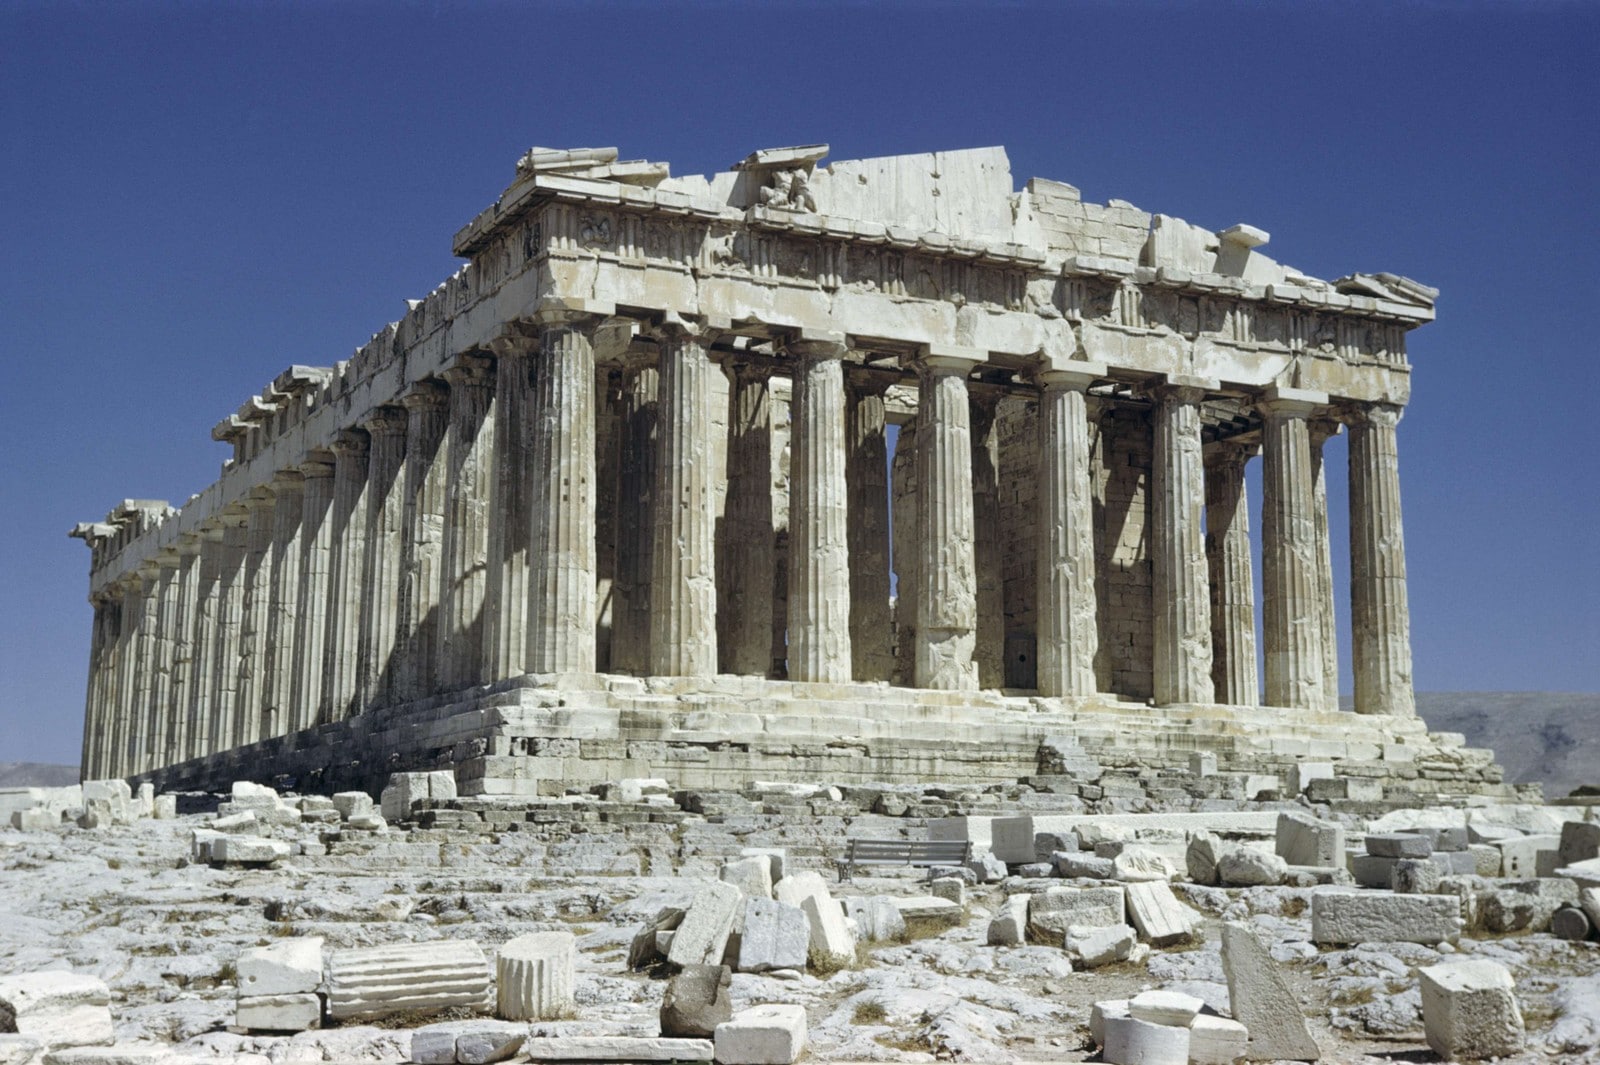 Le Parthénon : temple où été vénéré Athéna, déesse de la stratégie militaire,
Auteurs  : SA House - Lank/SUPERSTOCK/SIPA,
Numéro de reportage  : SUPERSTOCK45063218_000001.